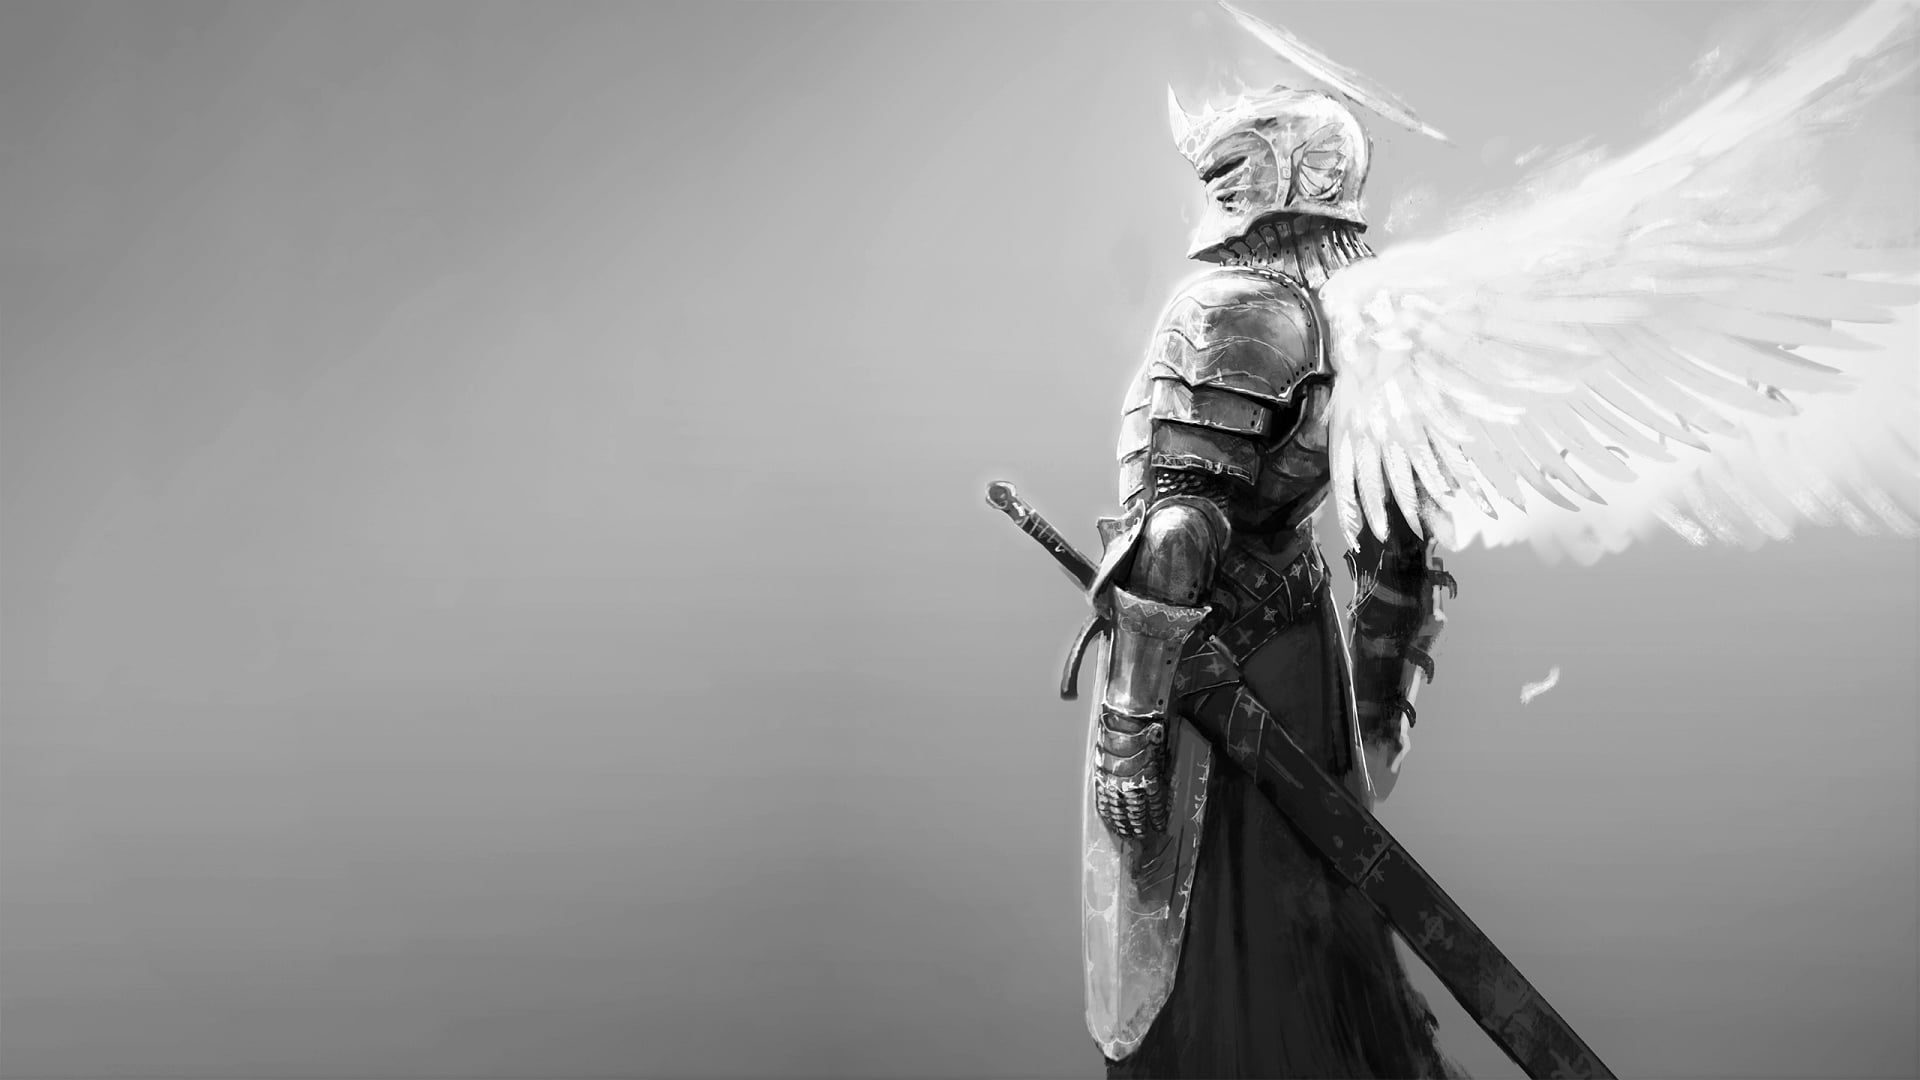 Fantasy armor, Dark knight wallpaper .com